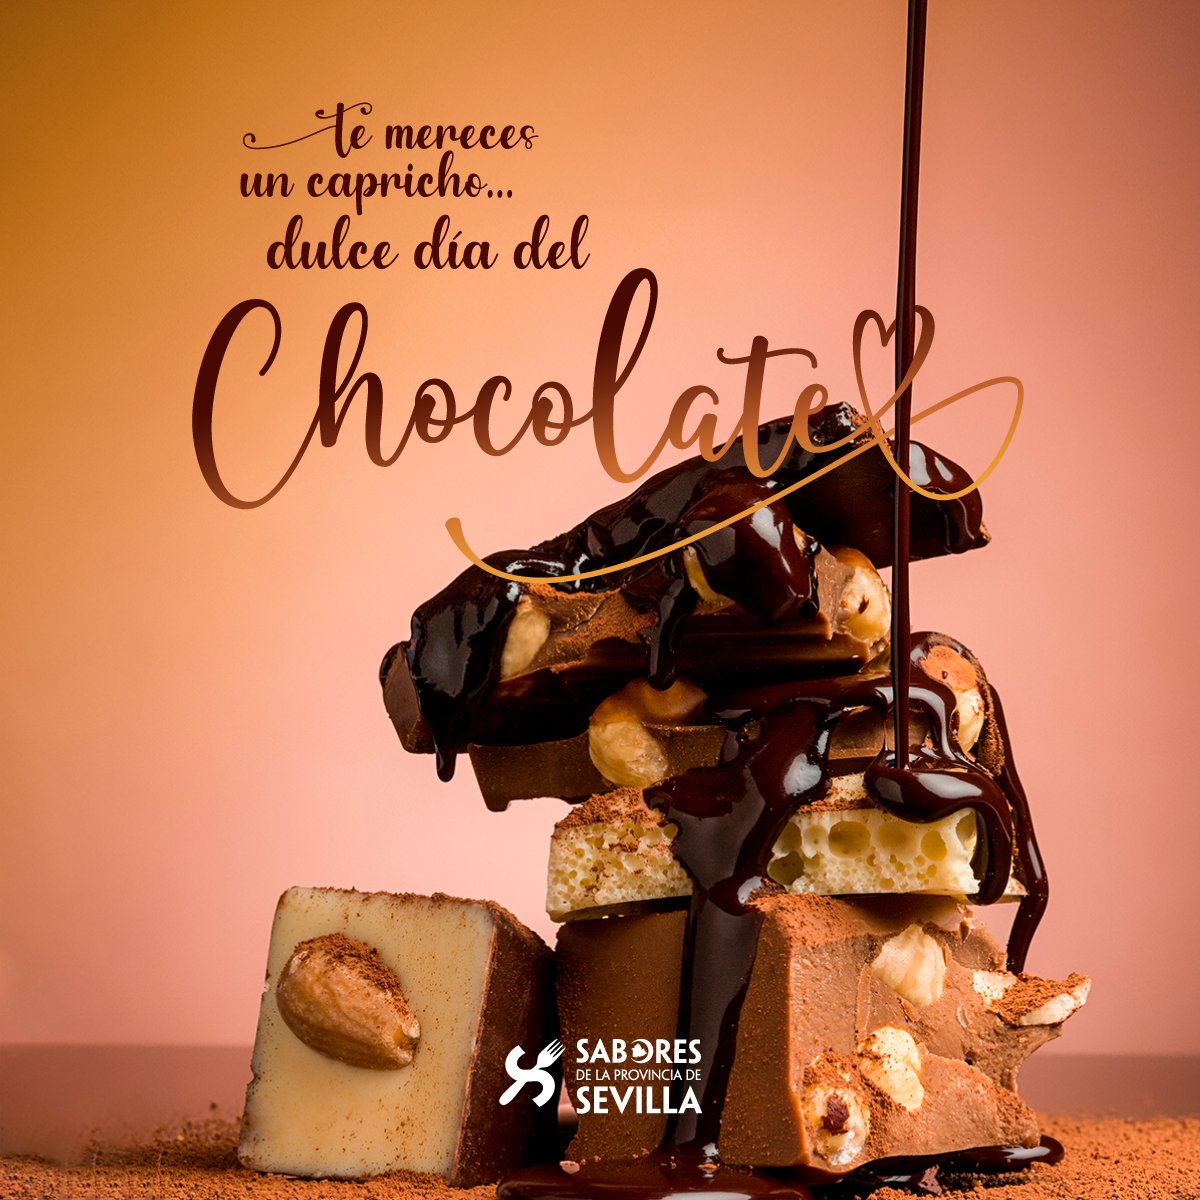 🤤✨ ¡Feliz y dulce #DíaDelChocolate!

🍫 Si eres amante del cacao, ¡date hoy un capricho! En tableta, con frutos secos, en bollería, postres... a ti, ¿cómo te gusta más?

Descubre empresas de #SaboresDeLaProvinciaDeSevilla con las que poder endulzarte: prodetur.es/prodetur/www/s…